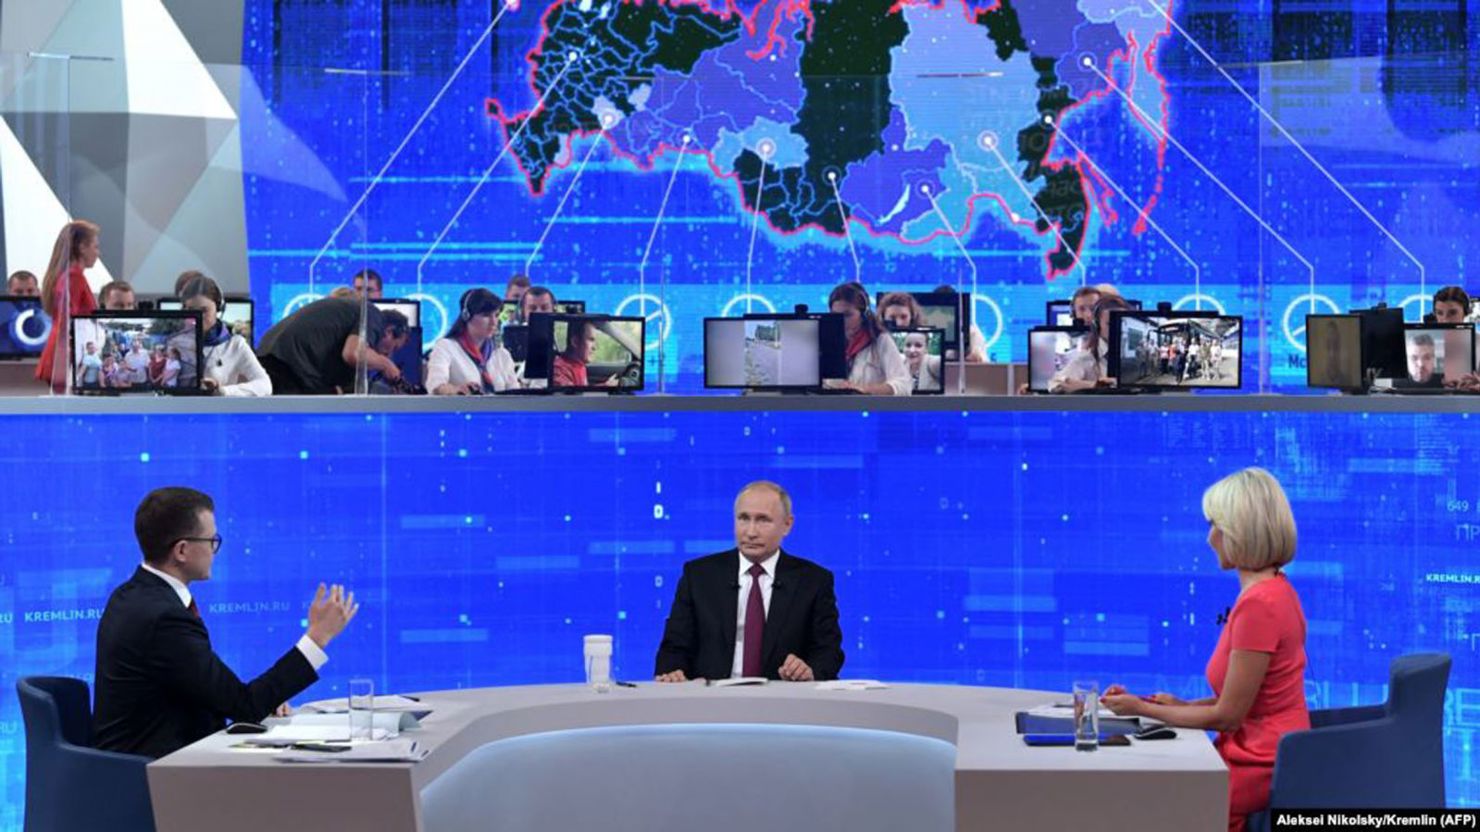 Tại Diễn đàn Russland Call 2019", Tổng thống Nga Vladimir Putin dự báo Liên minh Châu Âu (EU) sẽ tan rã. Ảnh: Alexey Nikolsky/Sputnik, via Reuters